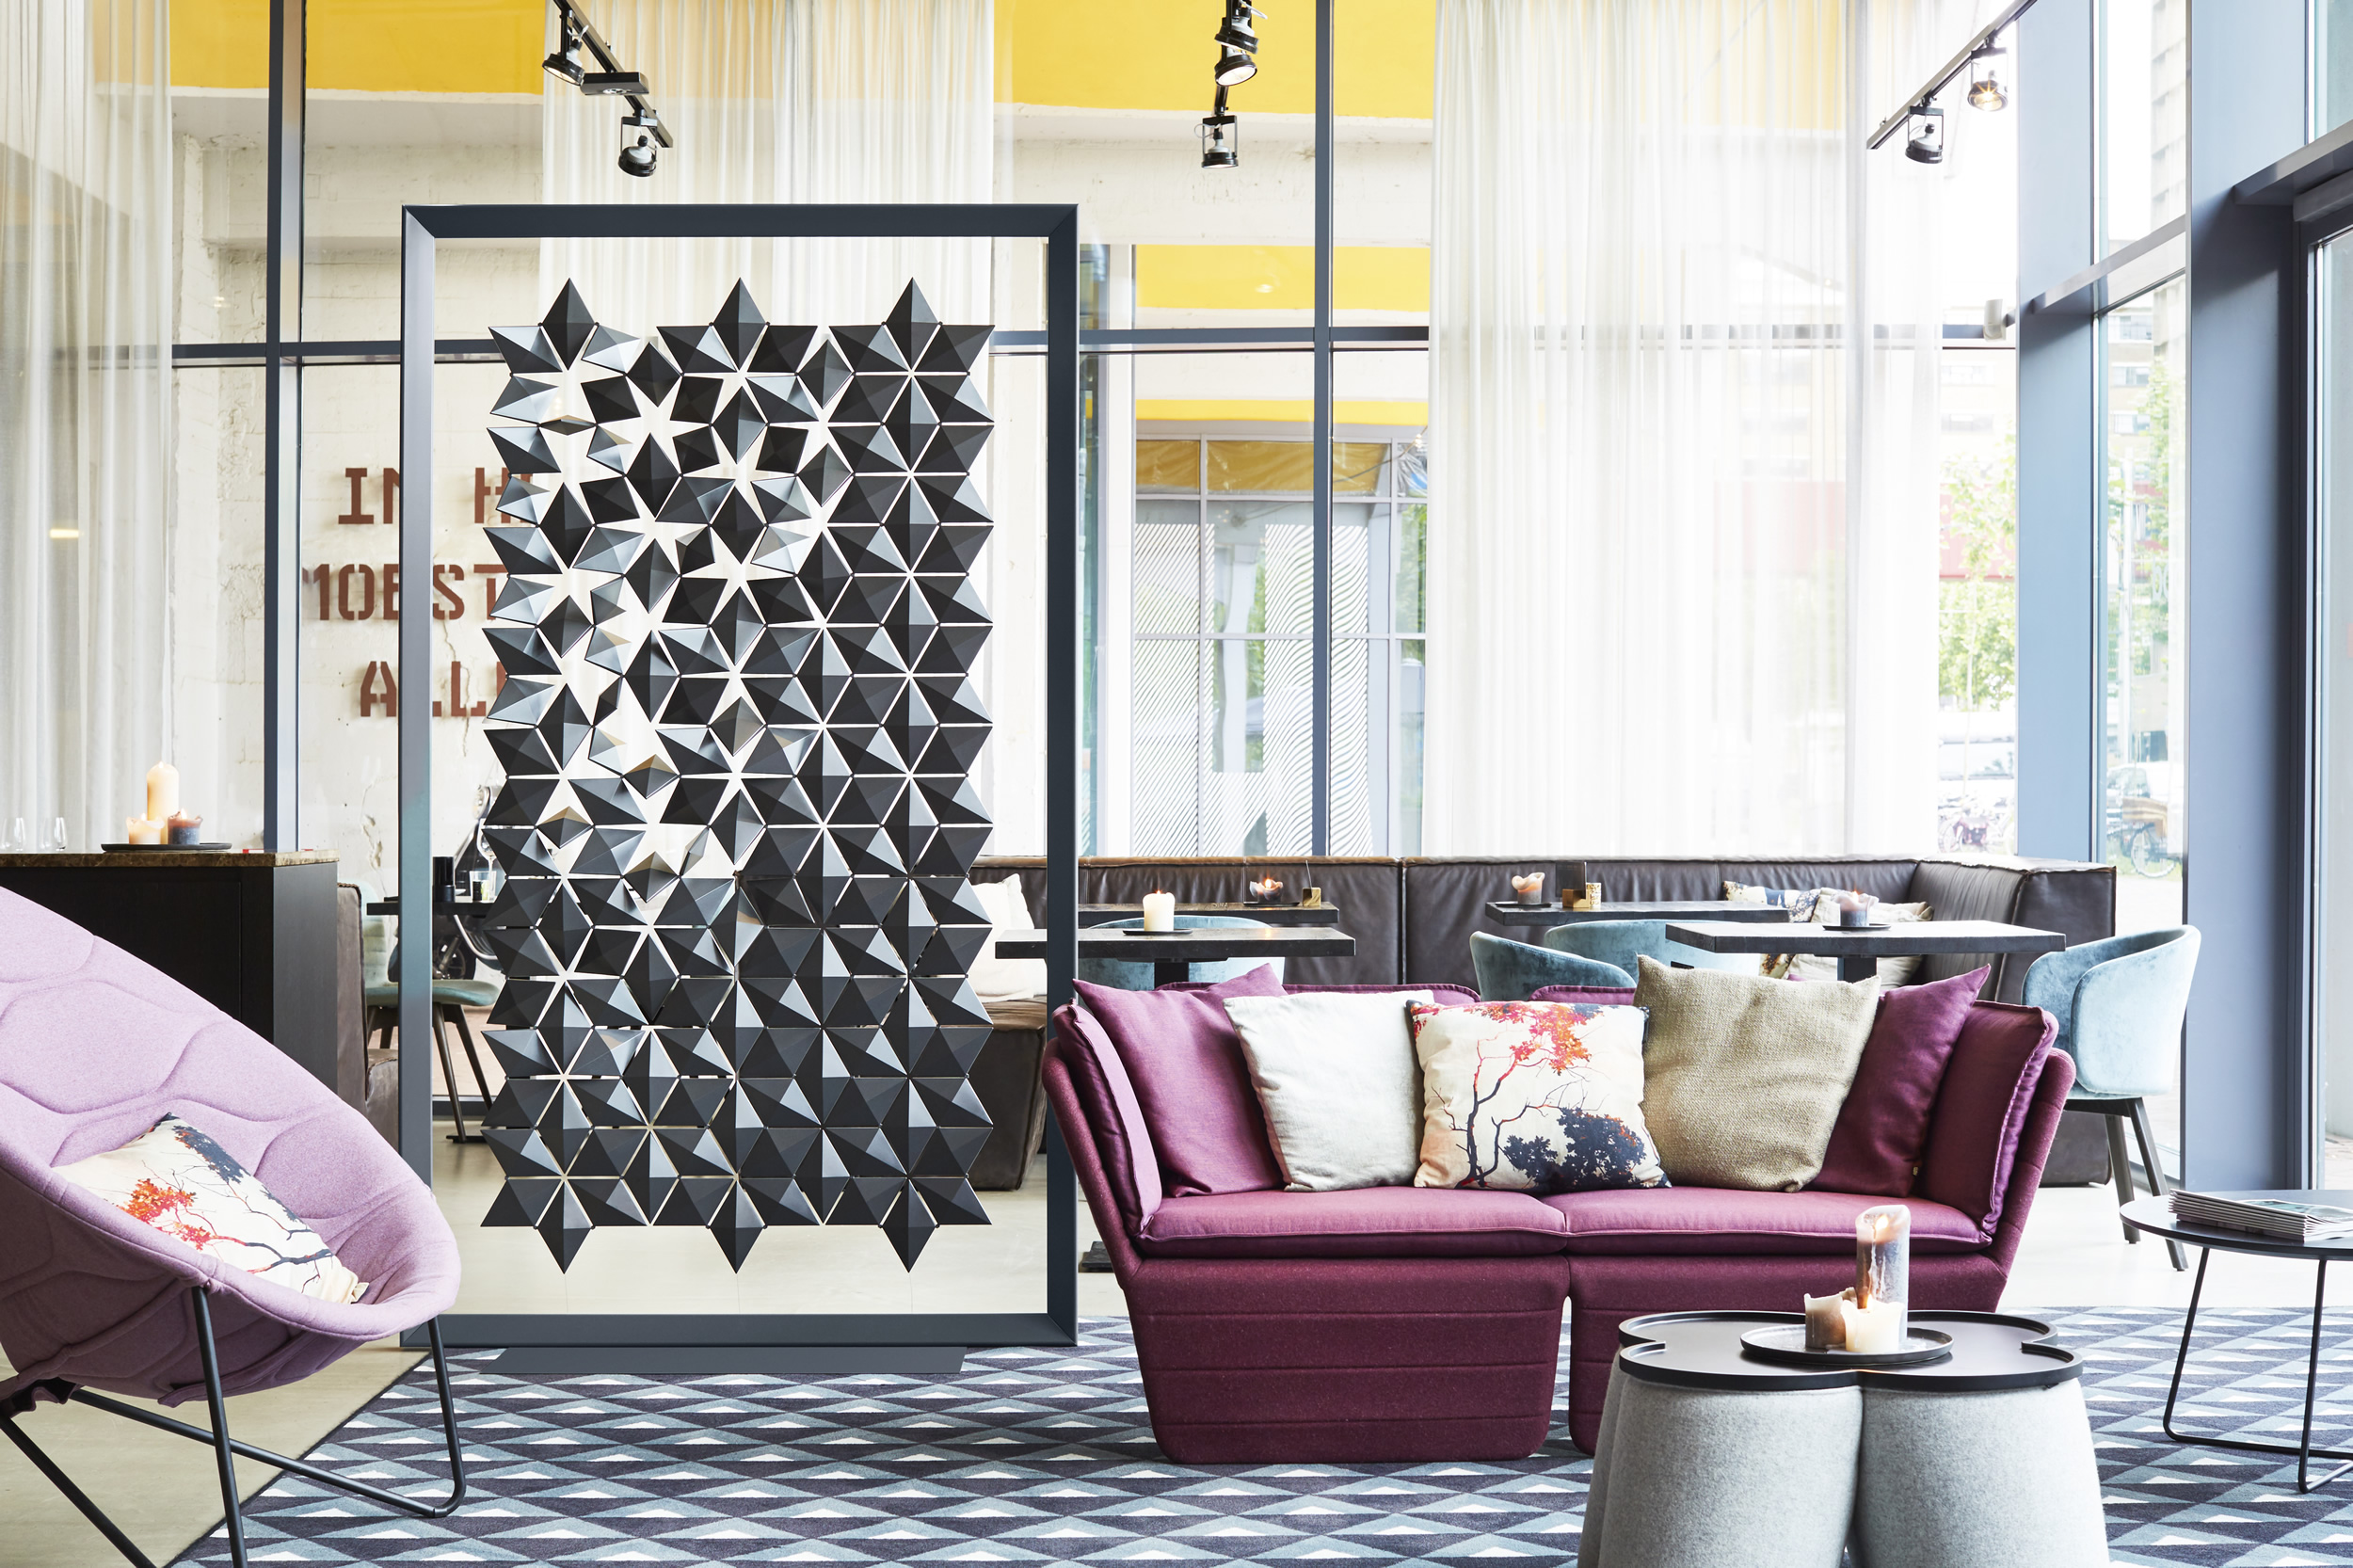 Freestanding Room Divider Facet by Bas van Leeuwen & Mireille Meijs for Bloomming